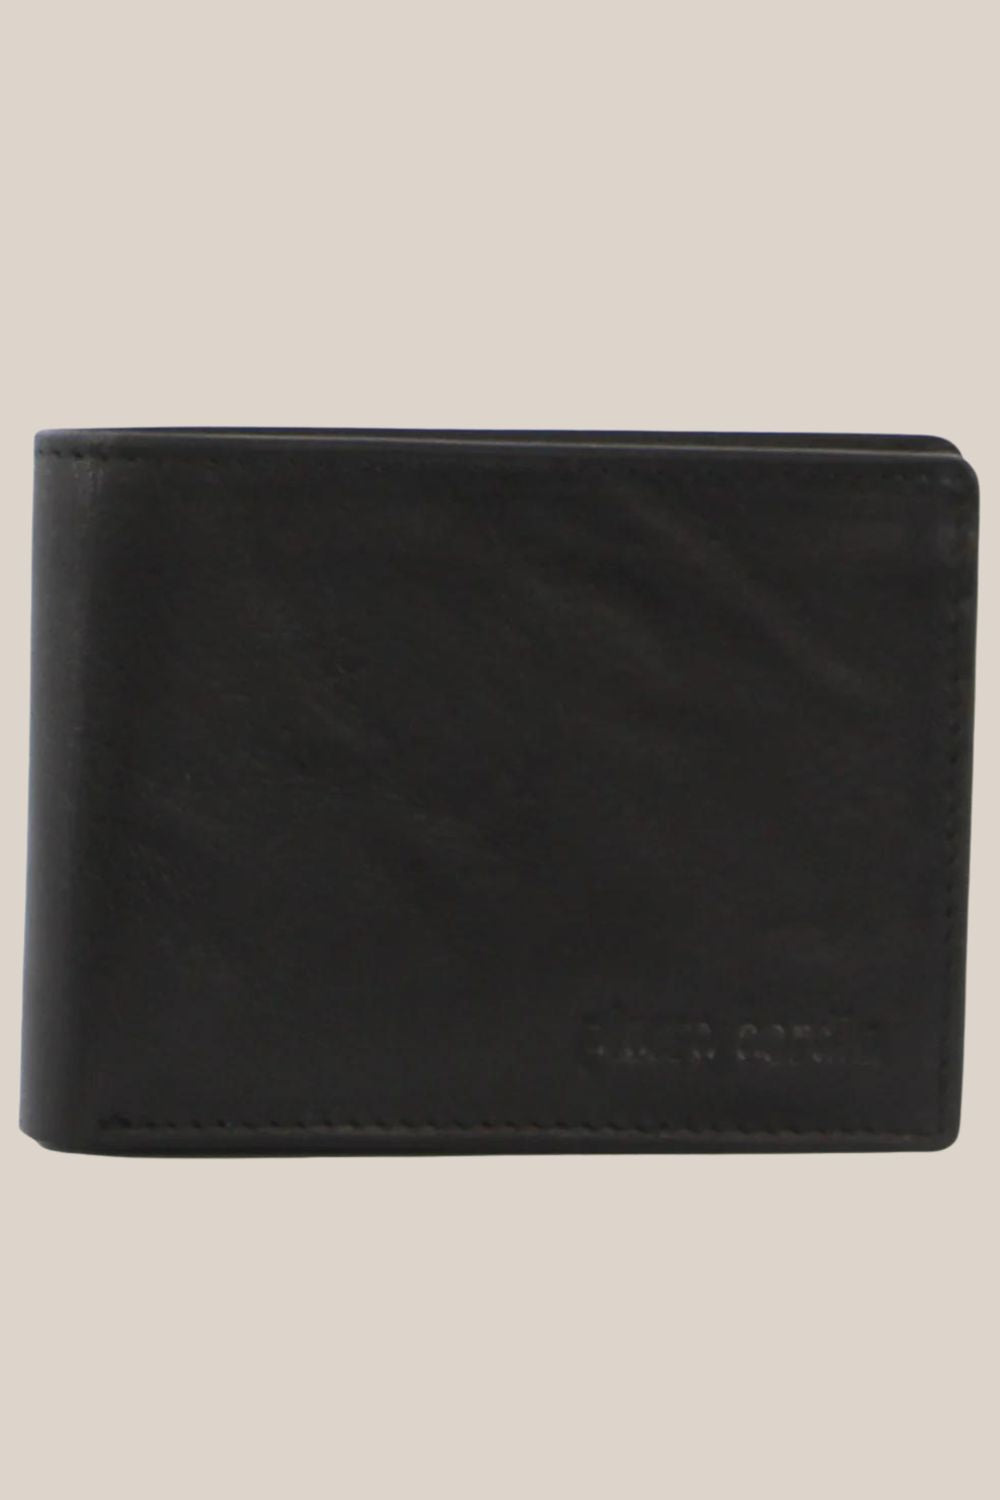 Pierre Cardin Leather Mens Bi-Fold Wallet